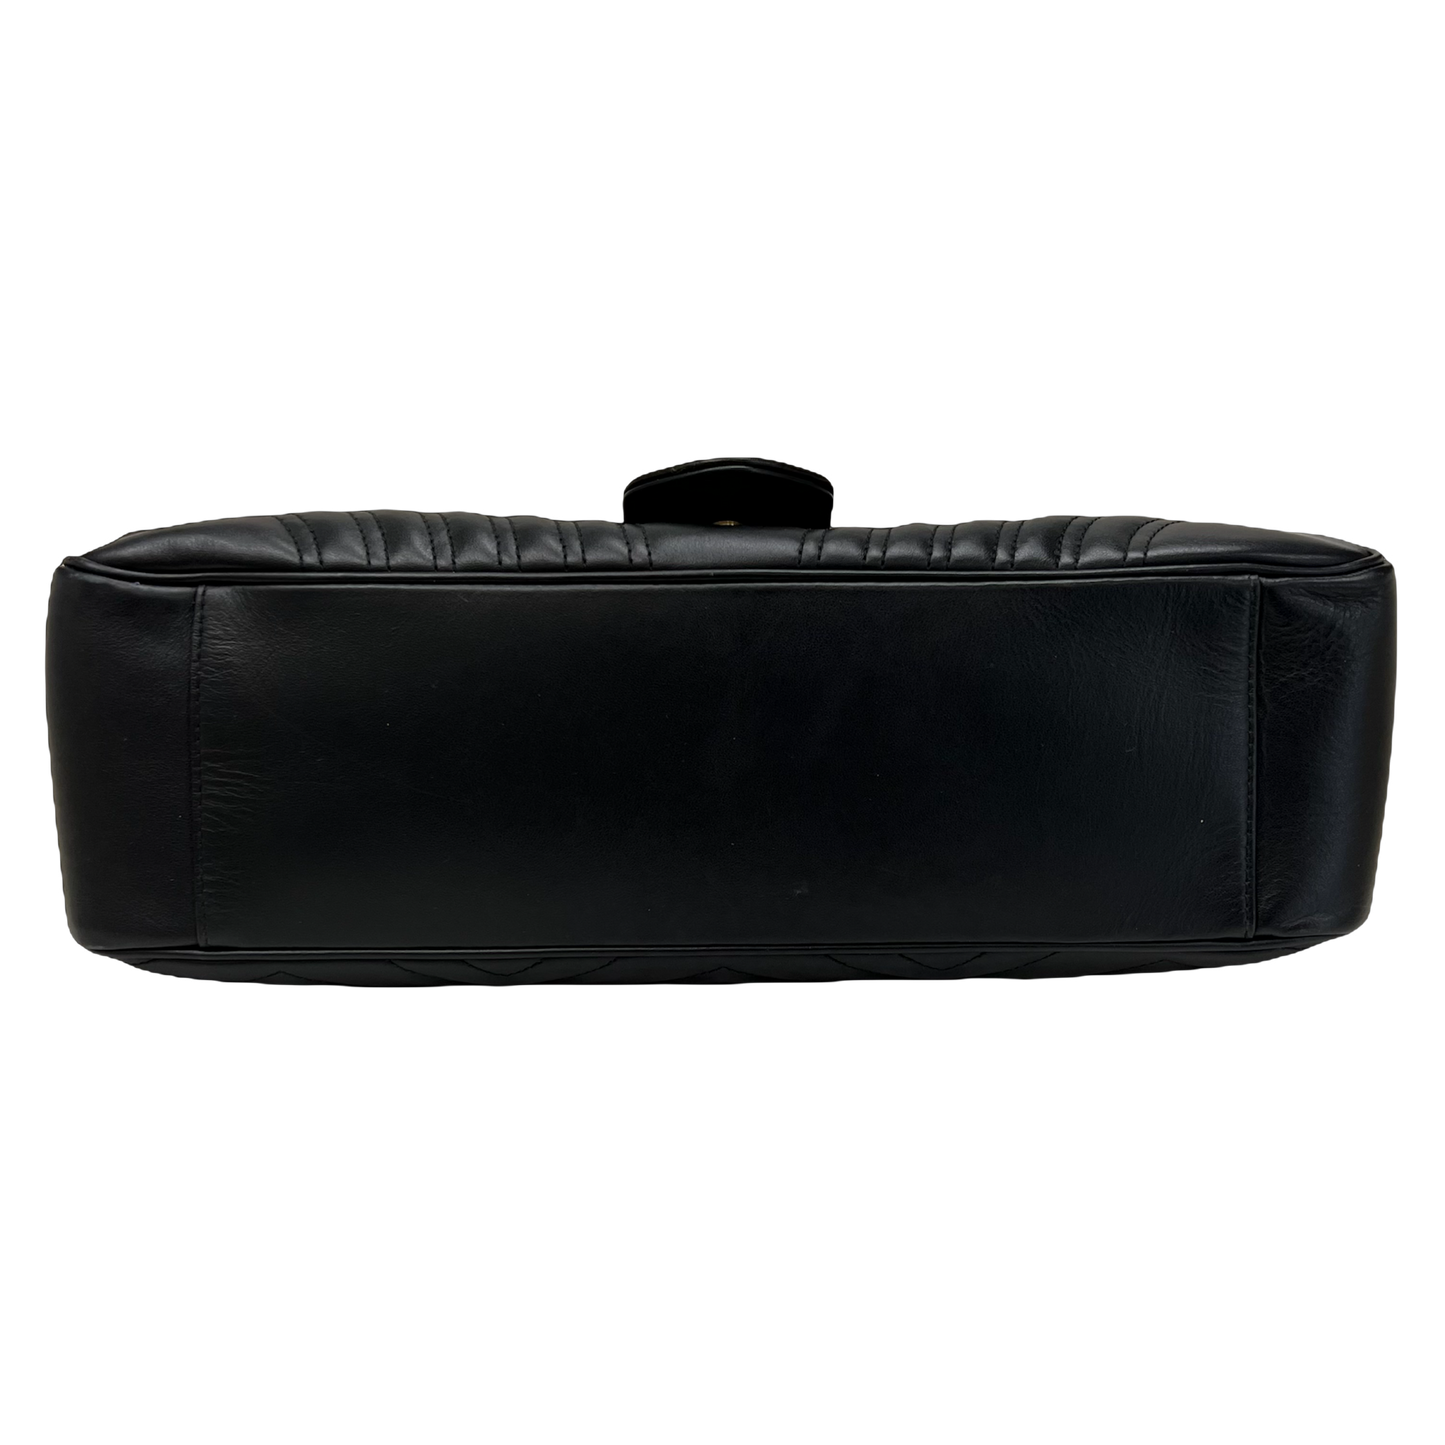 Gucci Marmont Matelassé Large Shoulder Bag